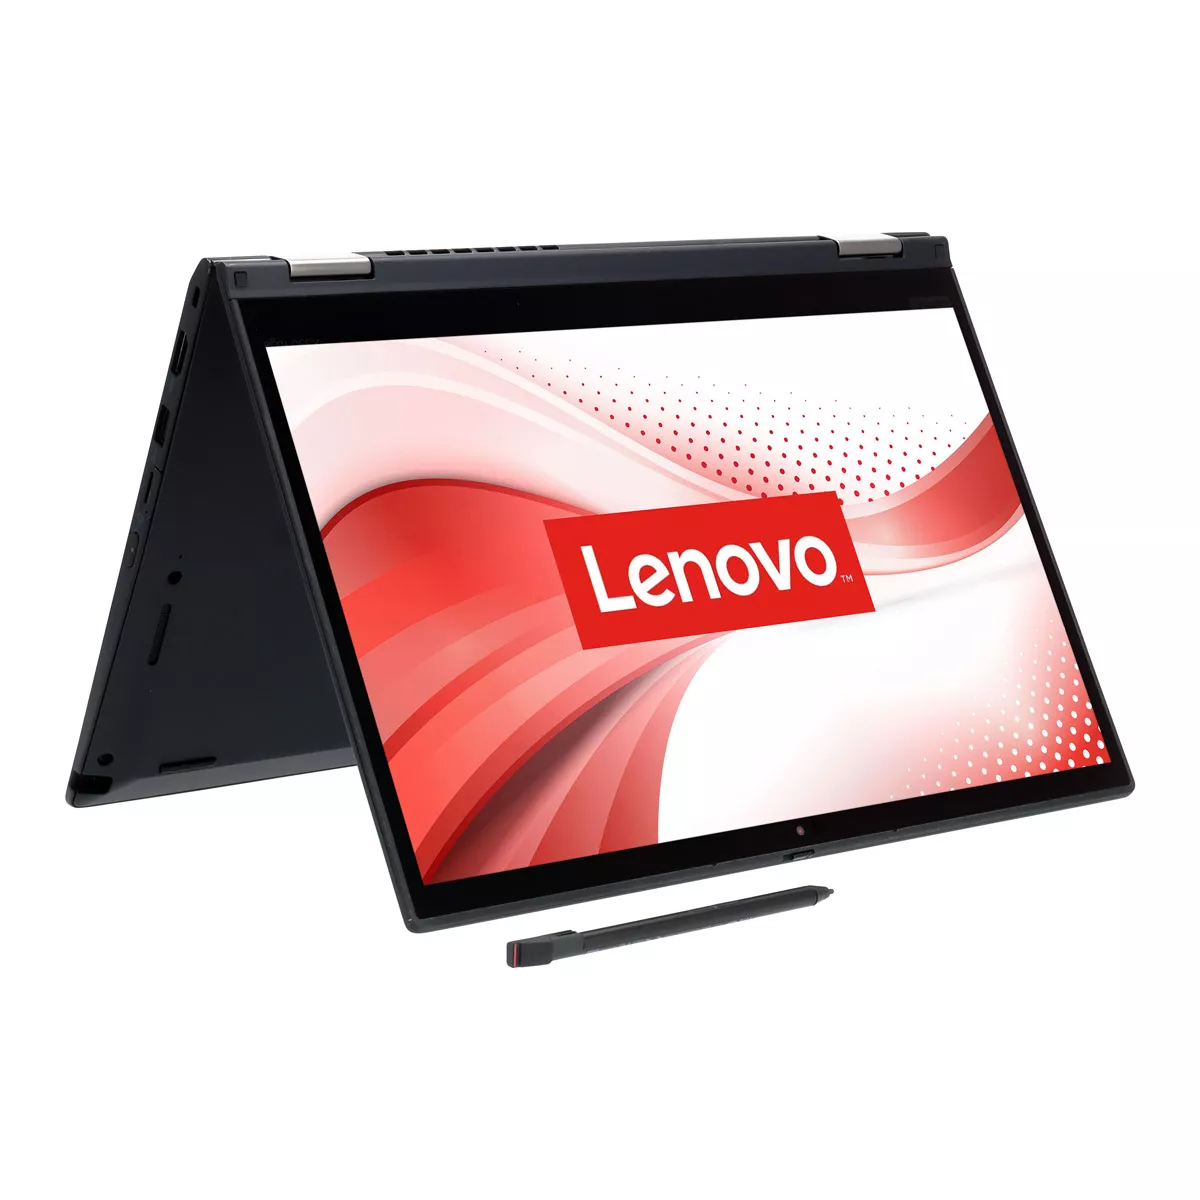 Lenovo ThinkPad X390 Yoga Core i5 8265U Touch 8 GB 240 GB M.2 nVME SSD Webcam B